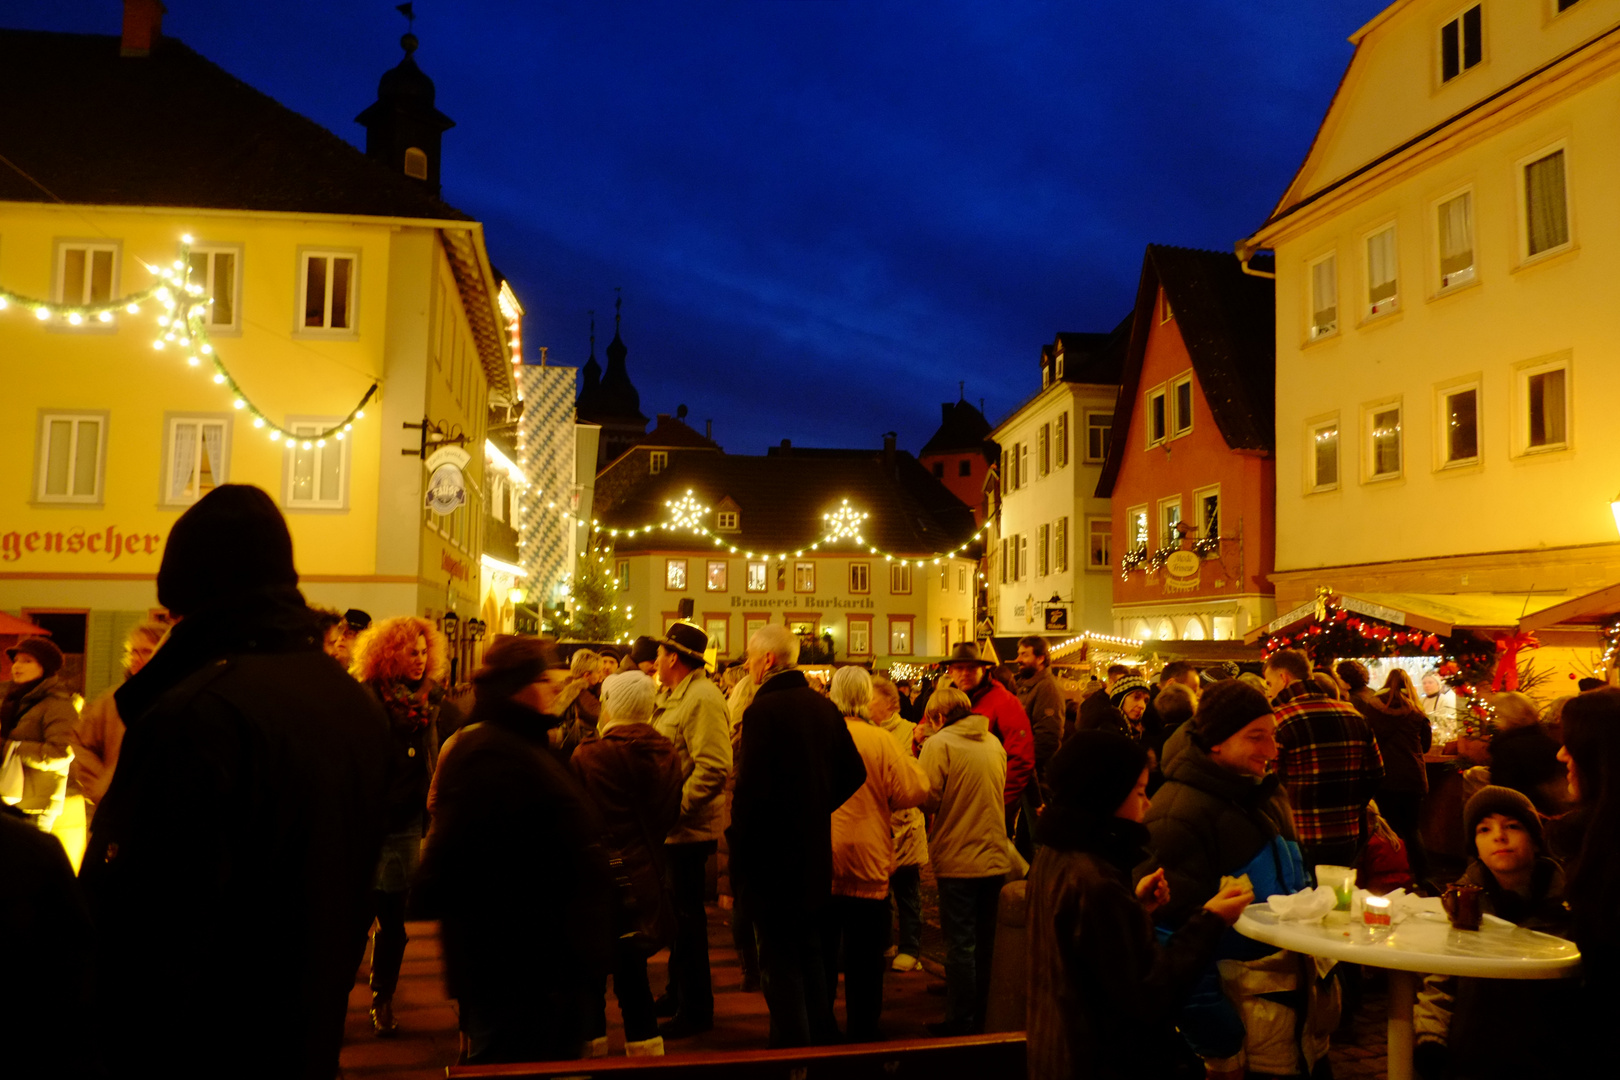 Weihnachten in Bayern